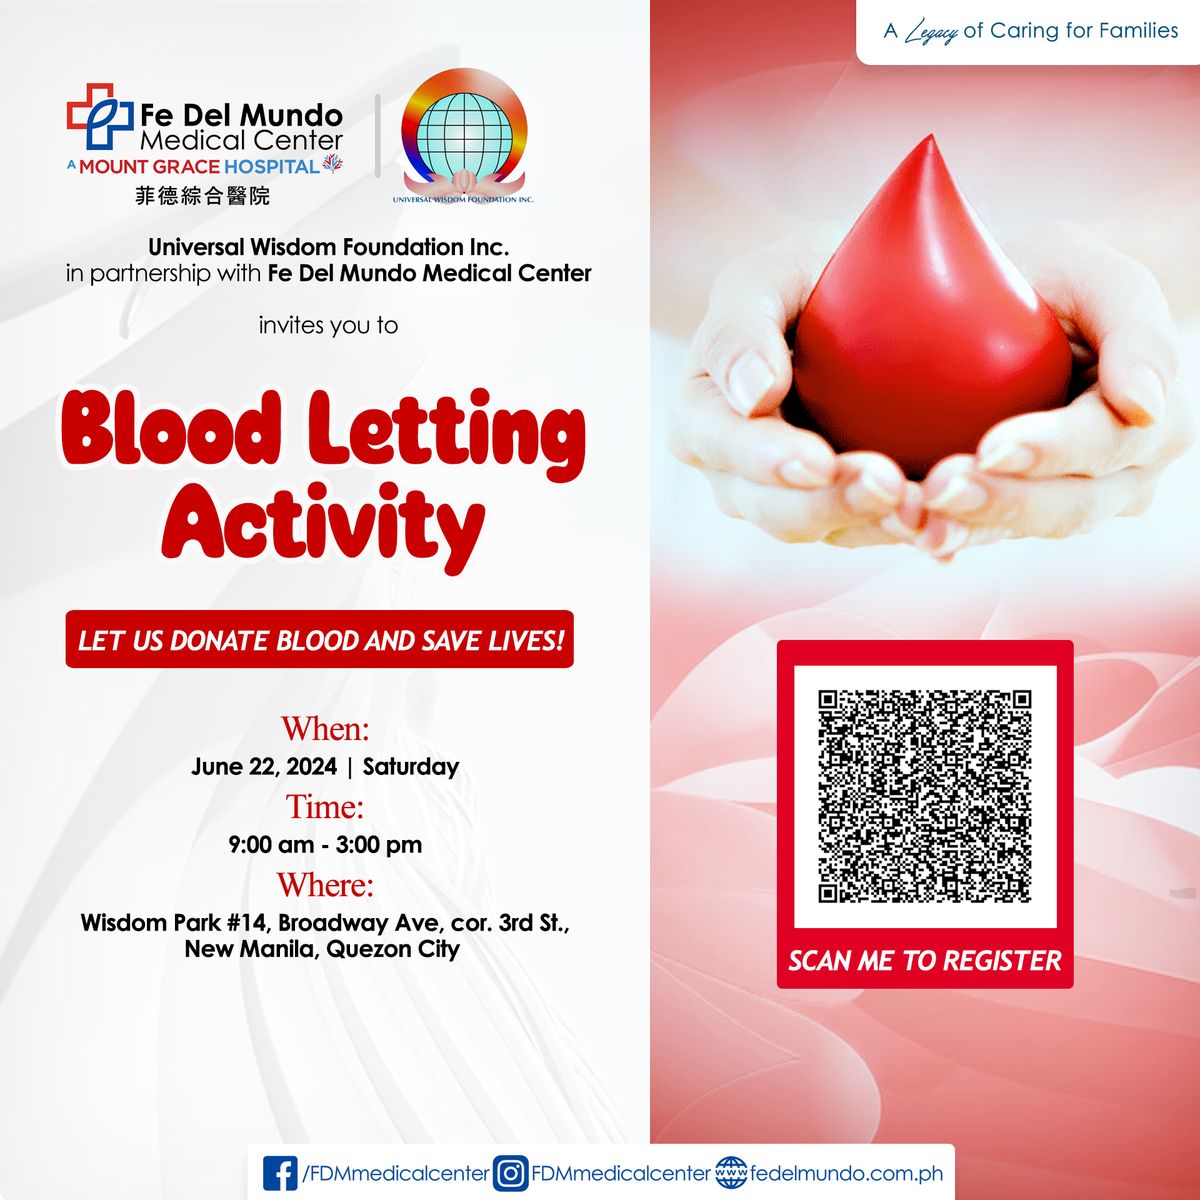 Bloodletting Activity on June 22, 2024 @ Wisdom Park, New Manila, Quezon City